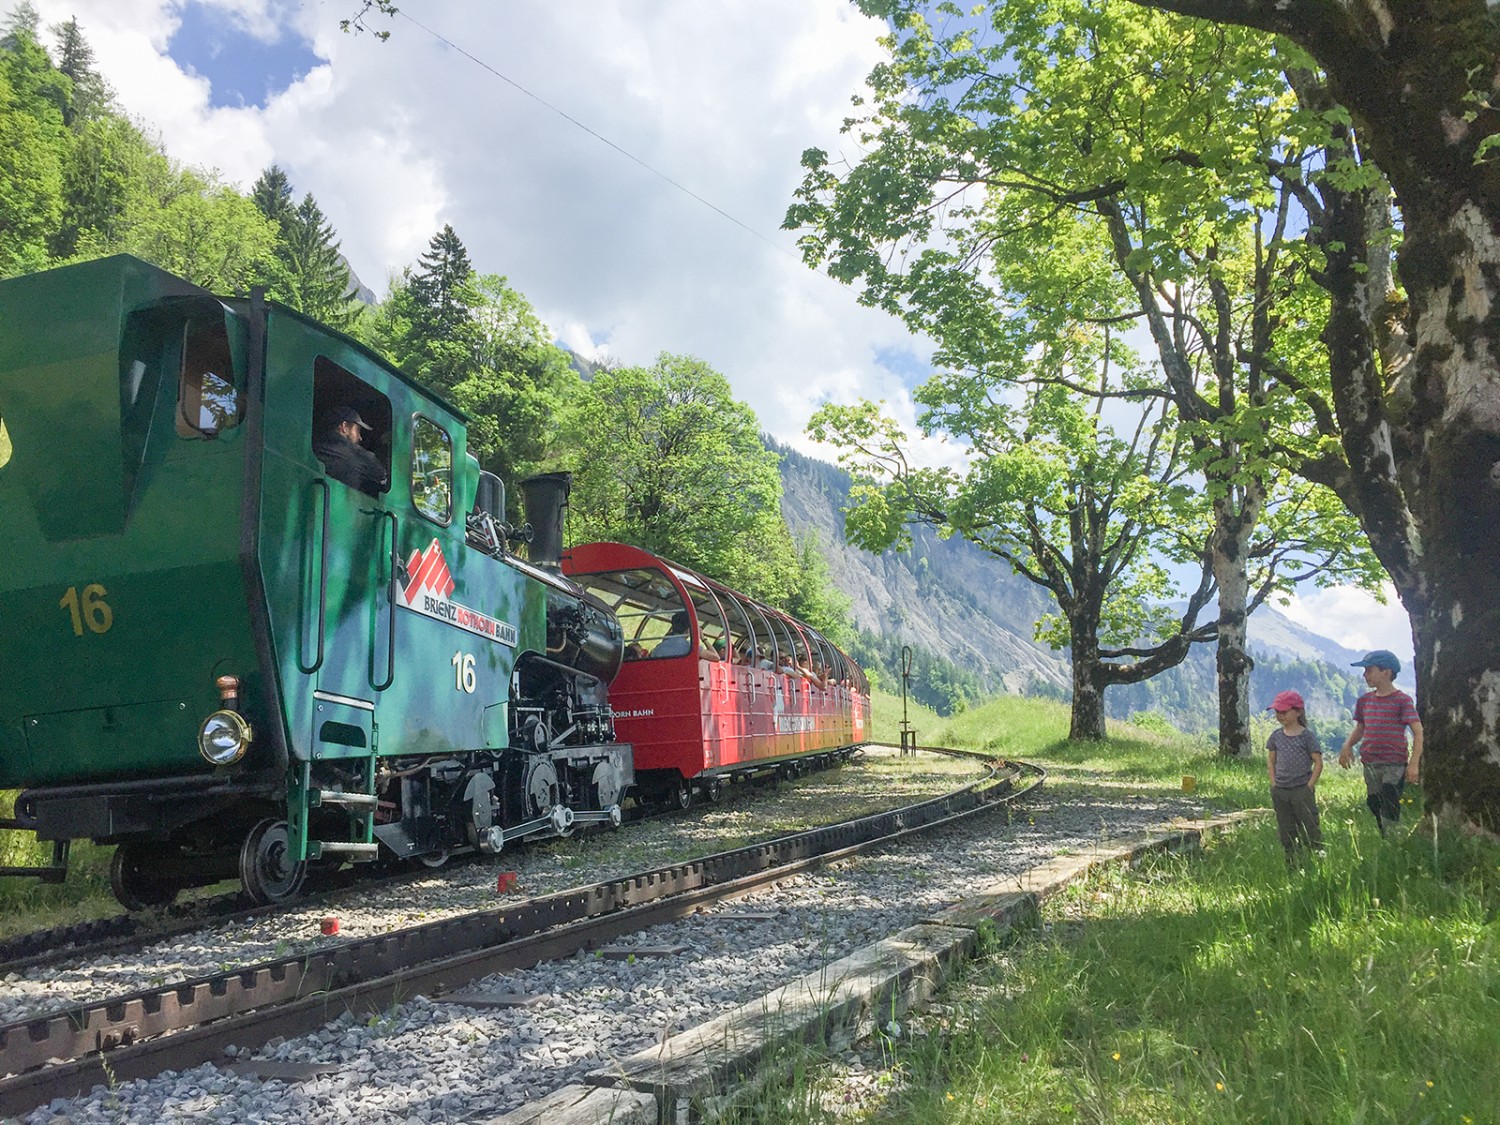 Une attraction chemin faisant: le train à vapeur! Photos: Rémy Kappeler